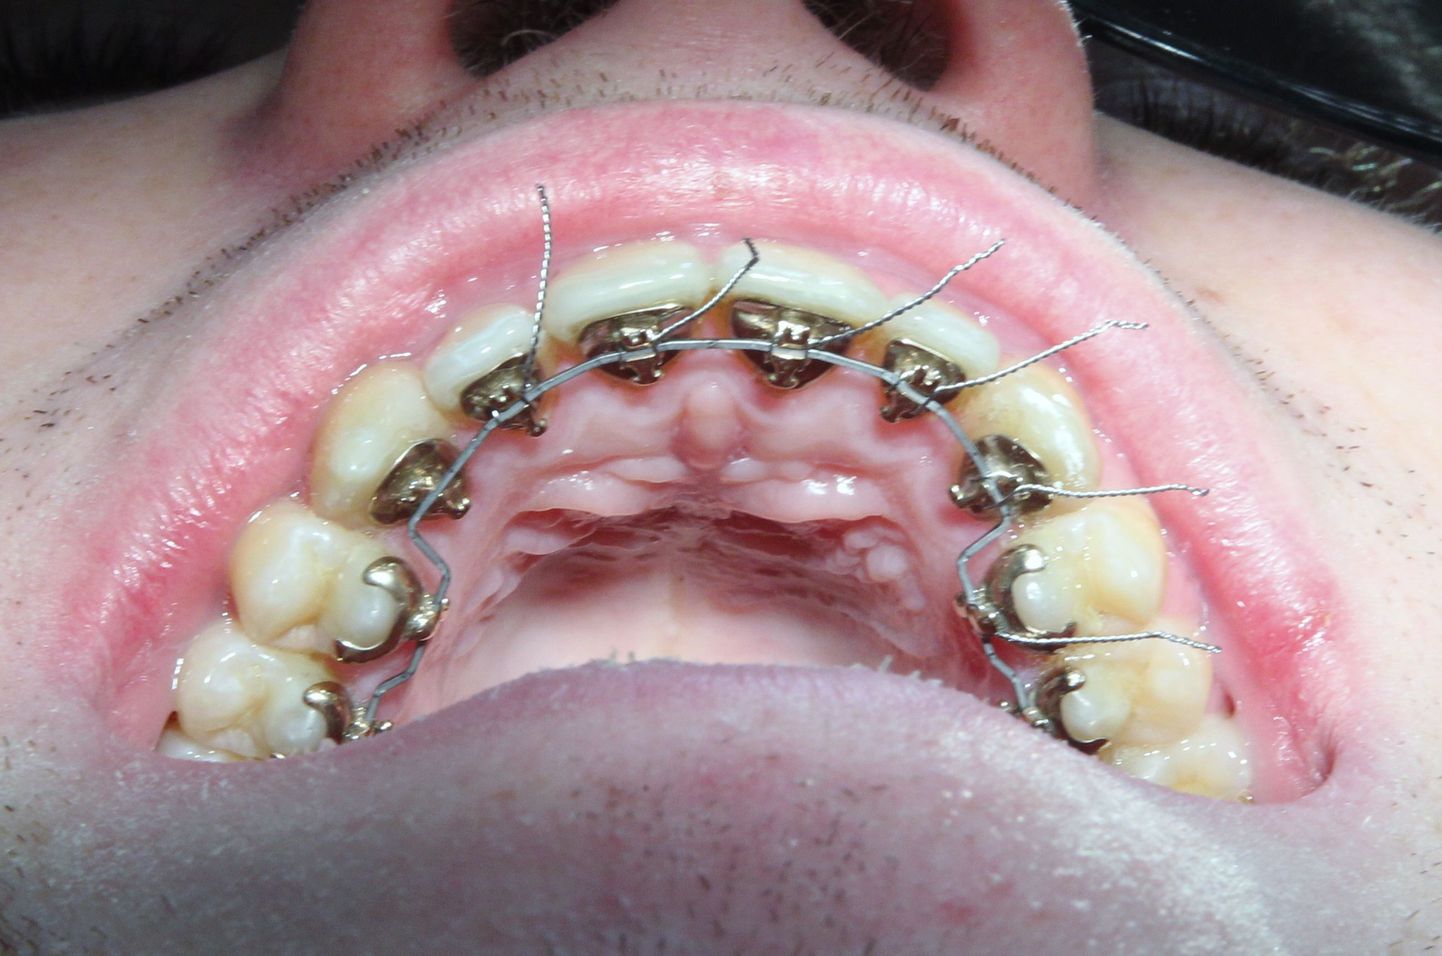 Täna vaatavad hambaarstid hea õnne korral ka tasuta suhu ja ütlevad, kuidas edasi toimida.